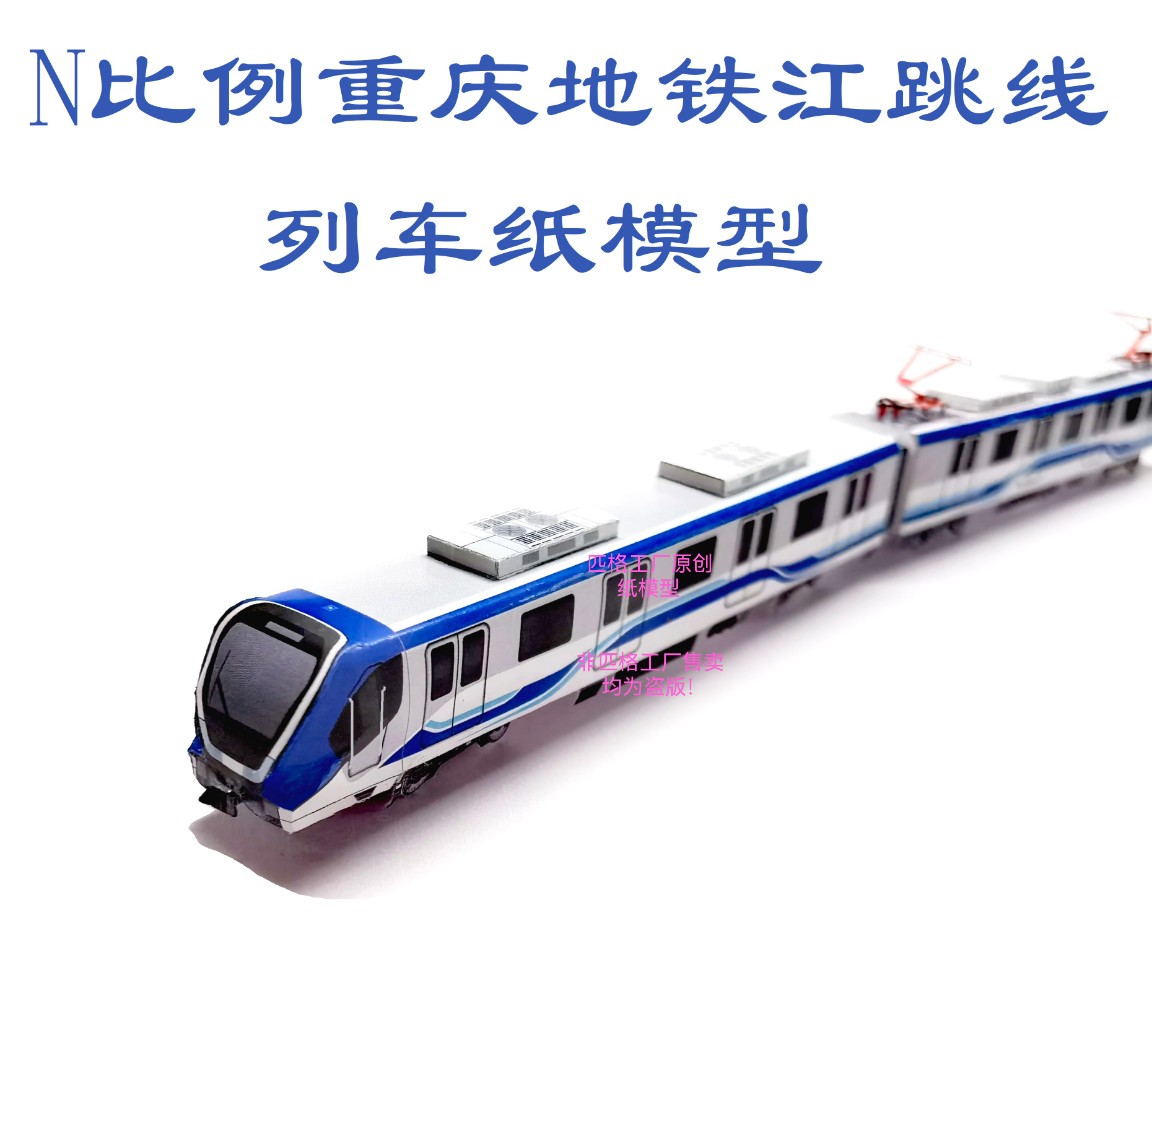 匹格工厂N比例重庆地铁江跳线列车模型3D纸模DIY铁路火车地铁模型